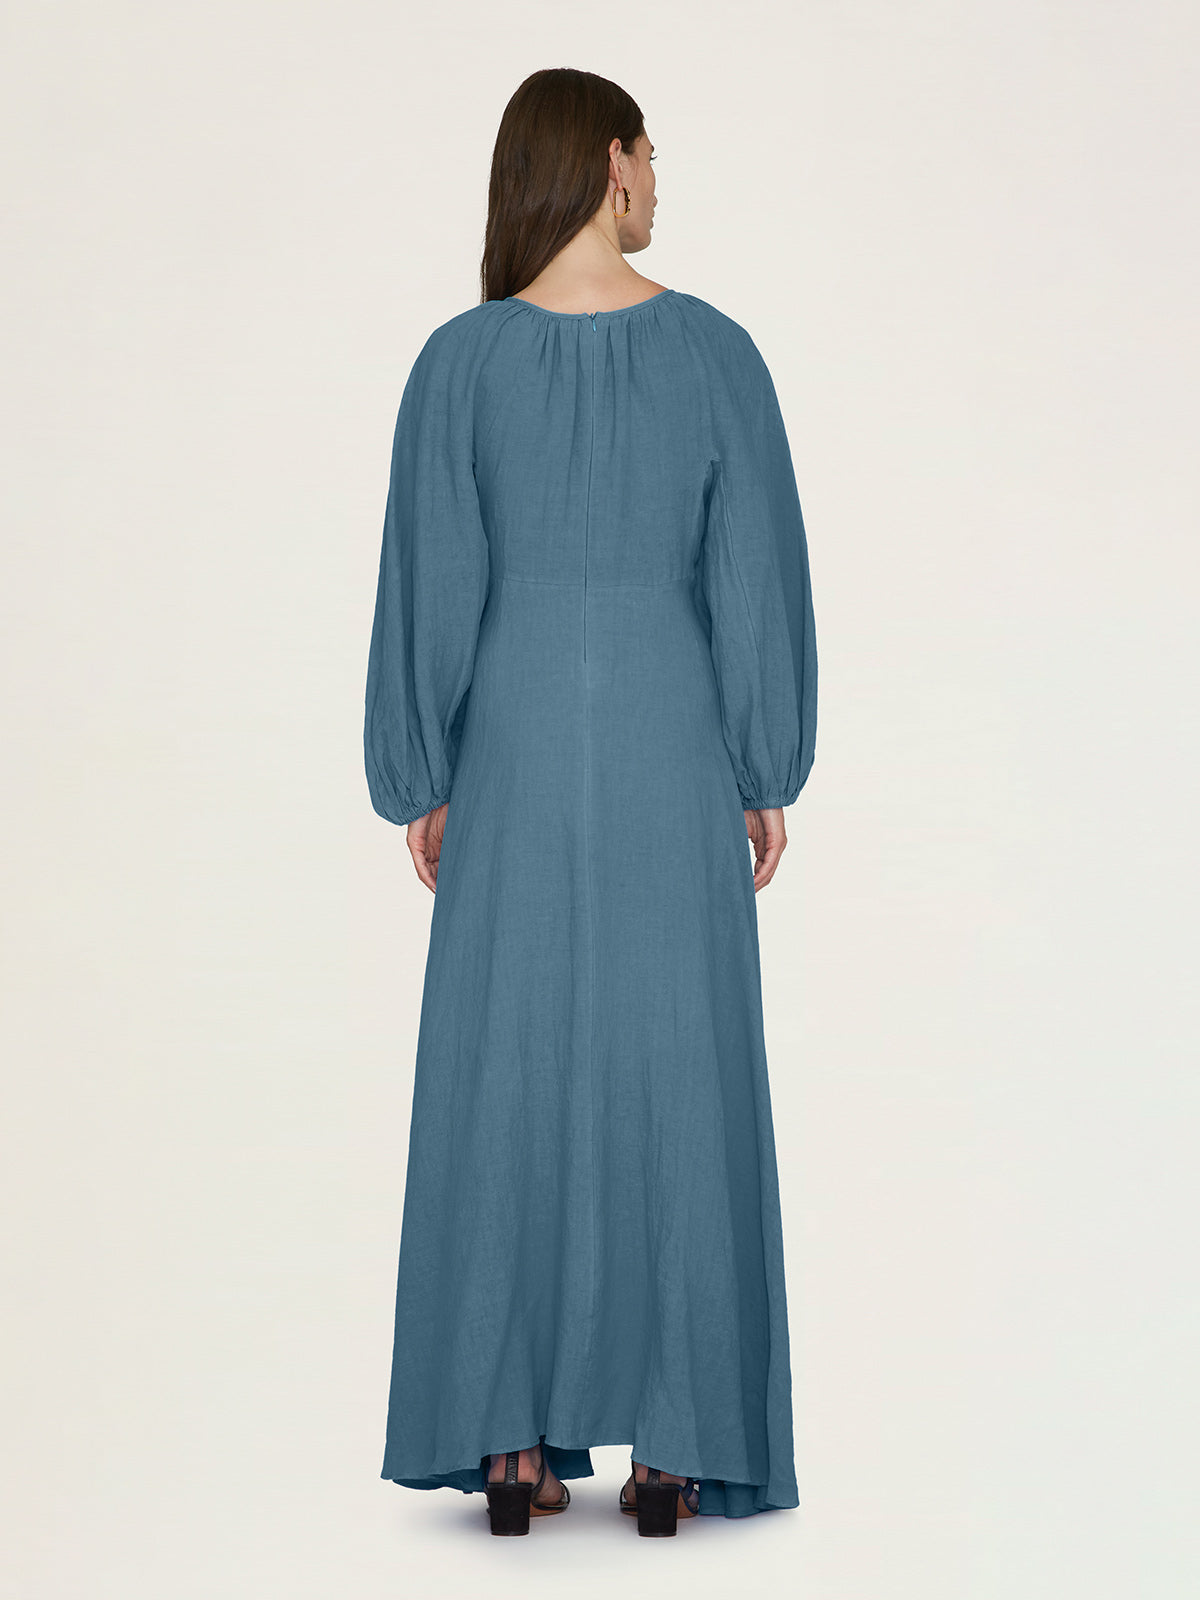 Maribelle Dress | Aegean Blue Maribelle Dress | Aegean Blue